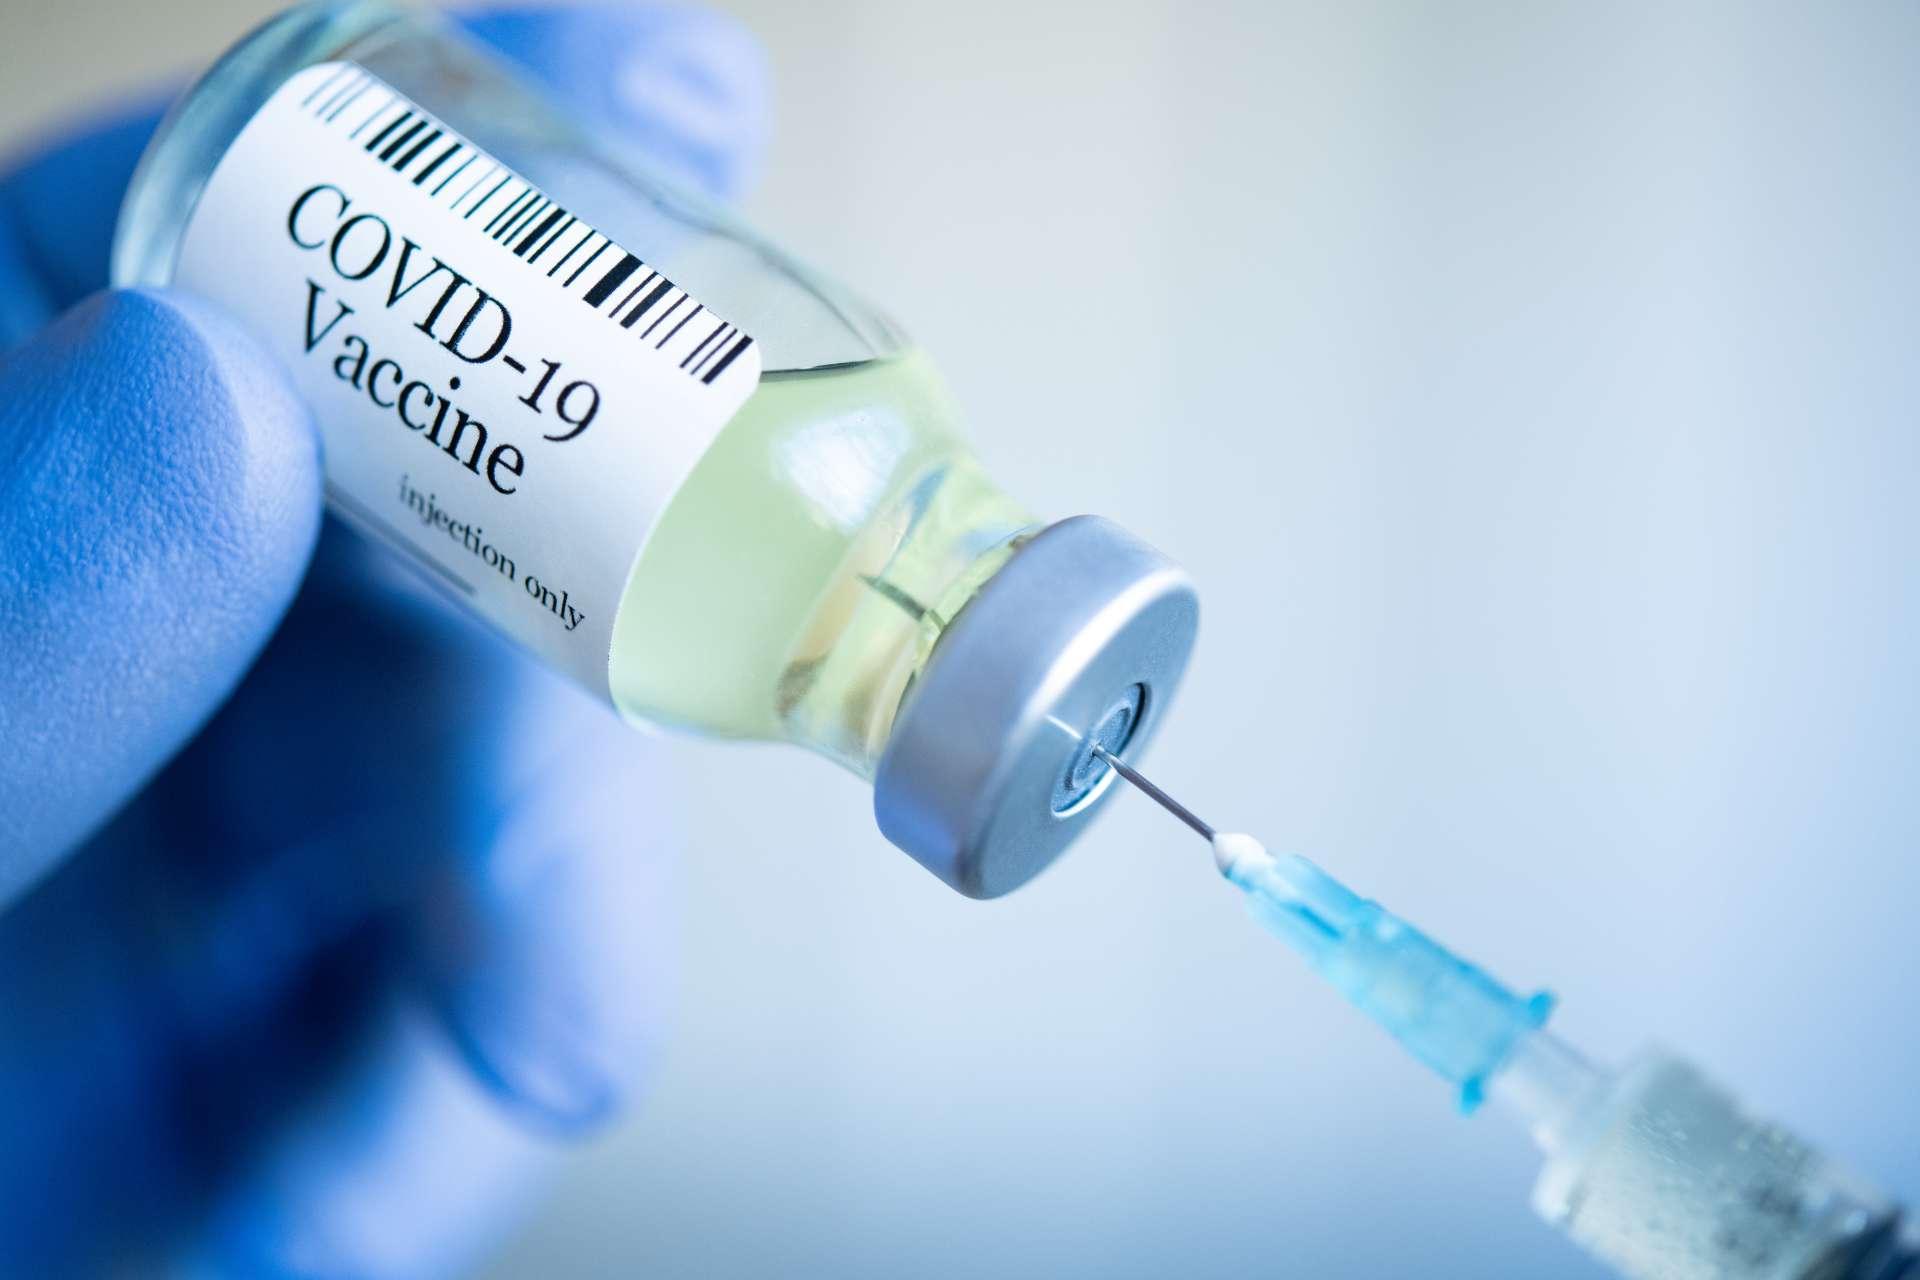 Vorbereitung der Injektion mit dem Covid-19-Impfstoff